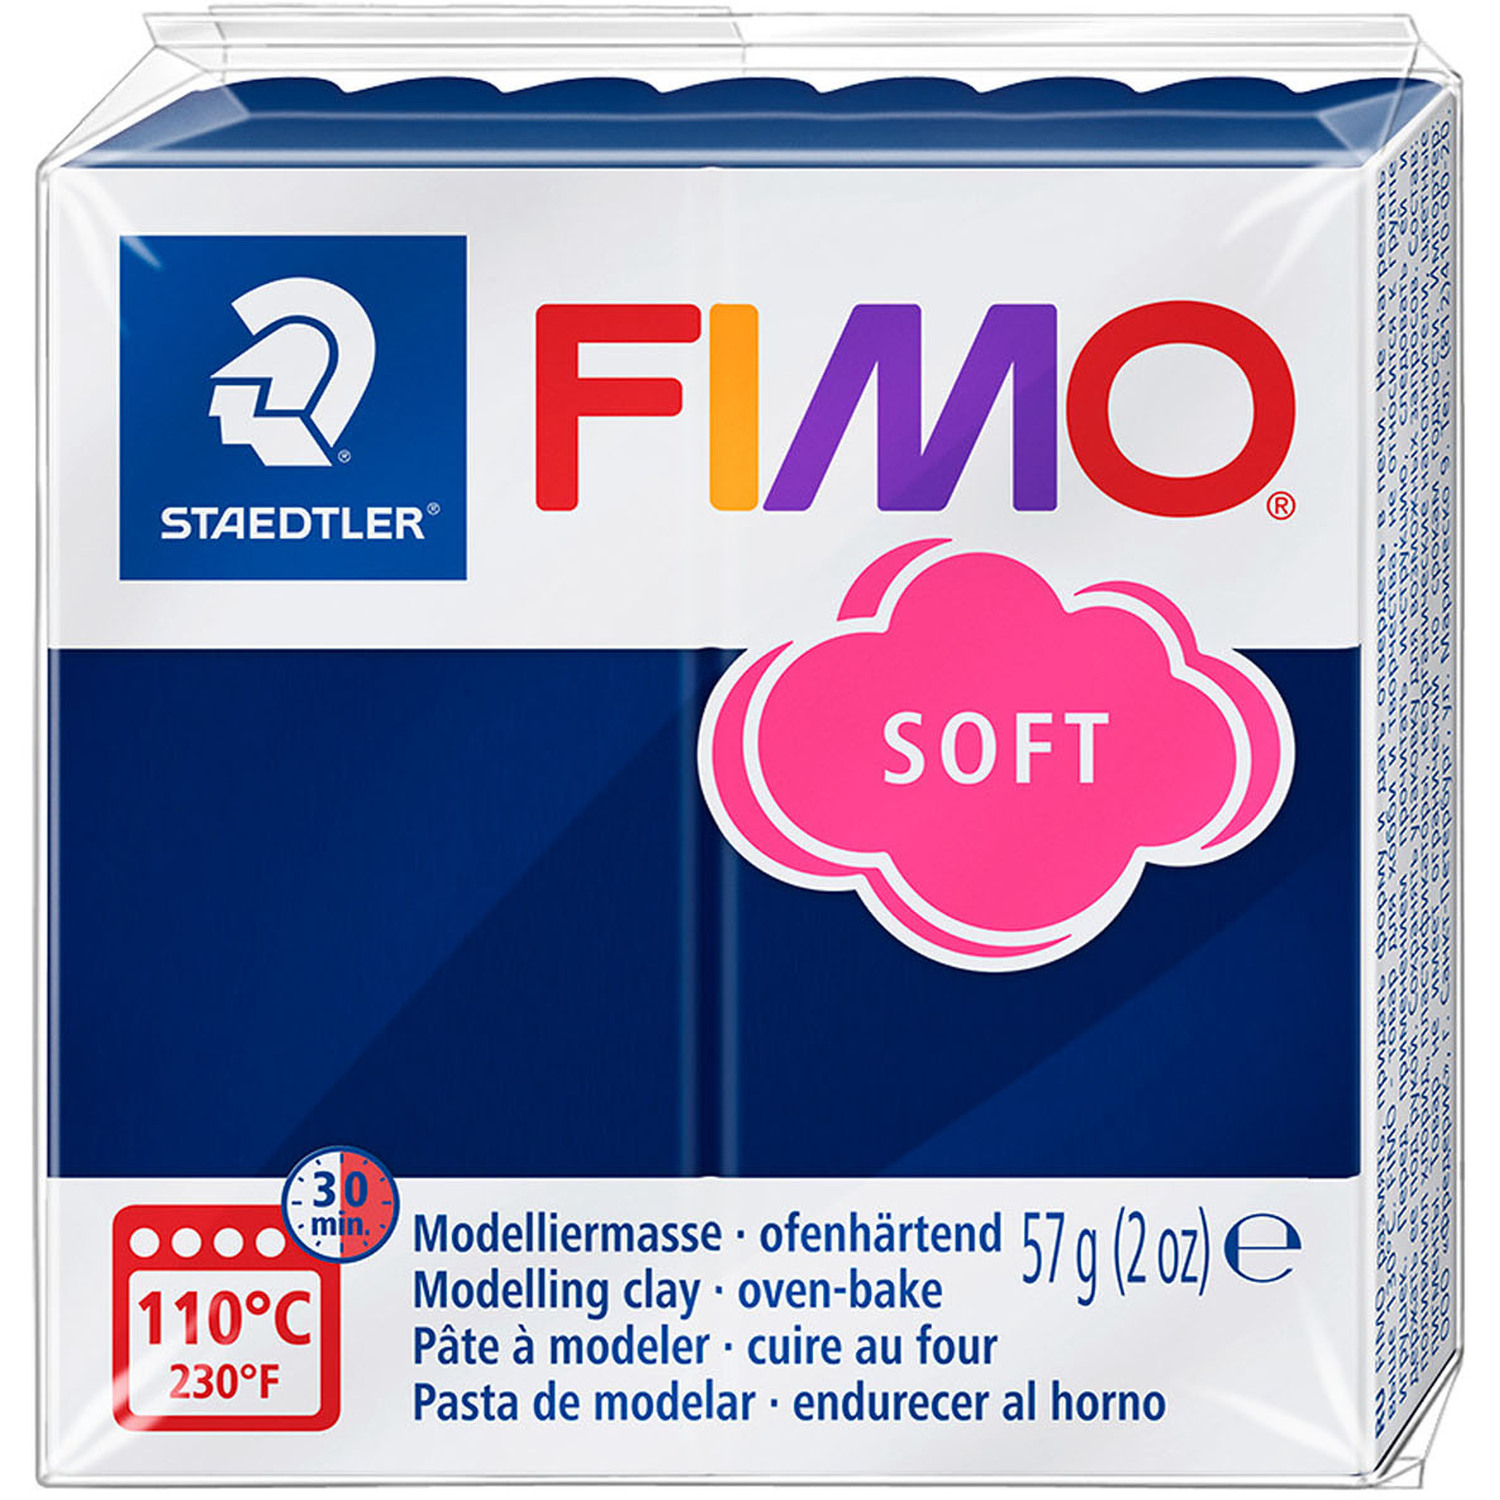 Staedtler FIMO Soft Modelling Clay Block - Windsor Blue Image 1